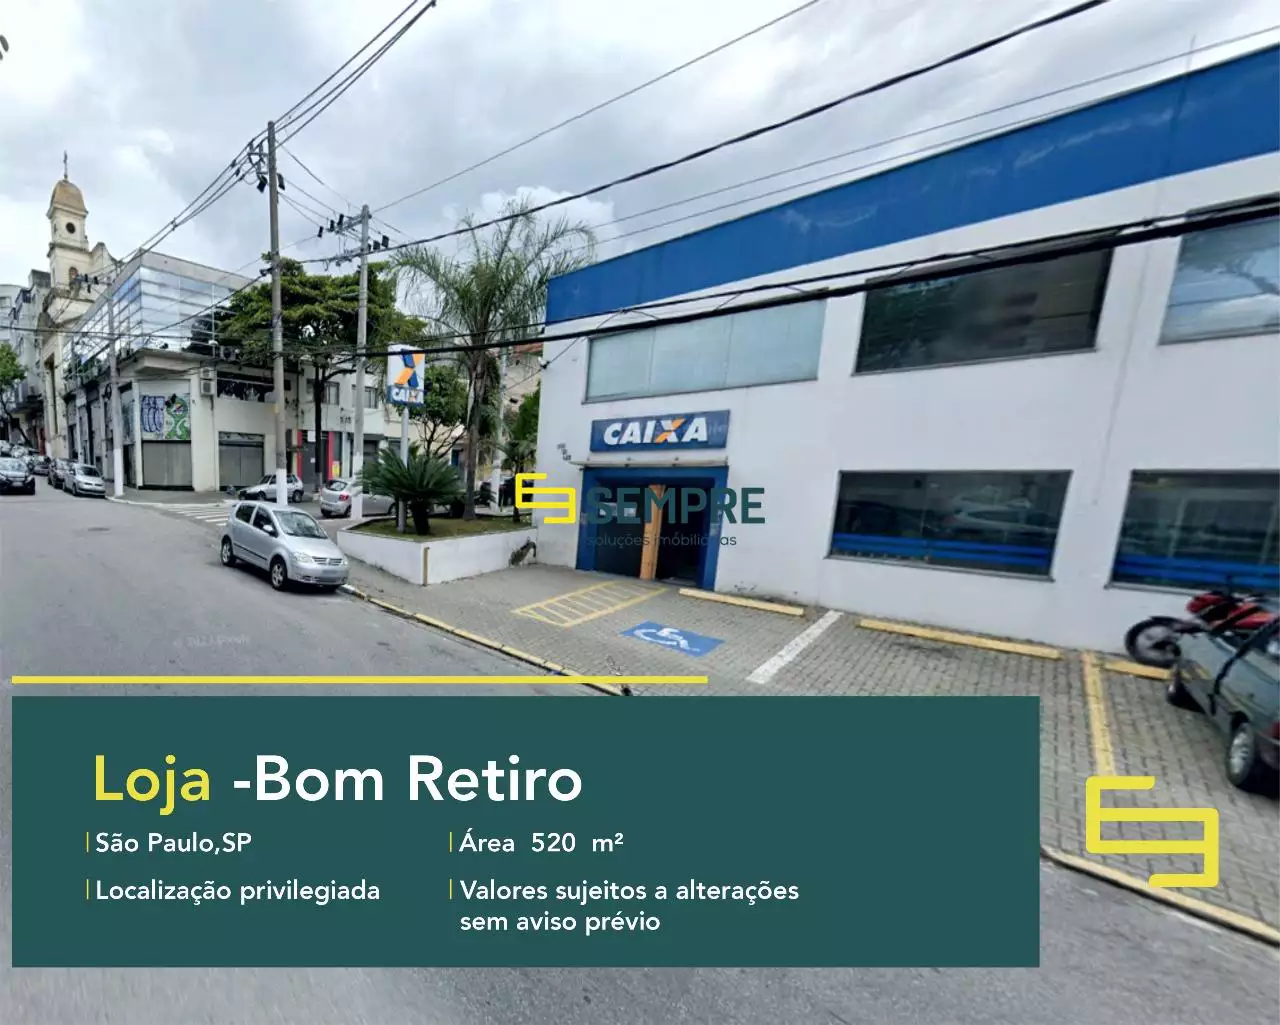 Loja para locação no Bom Retiro em São Paulo, excelente localização. O estabelecimento comercial conta, sobretudo, com área de 520,5 m².